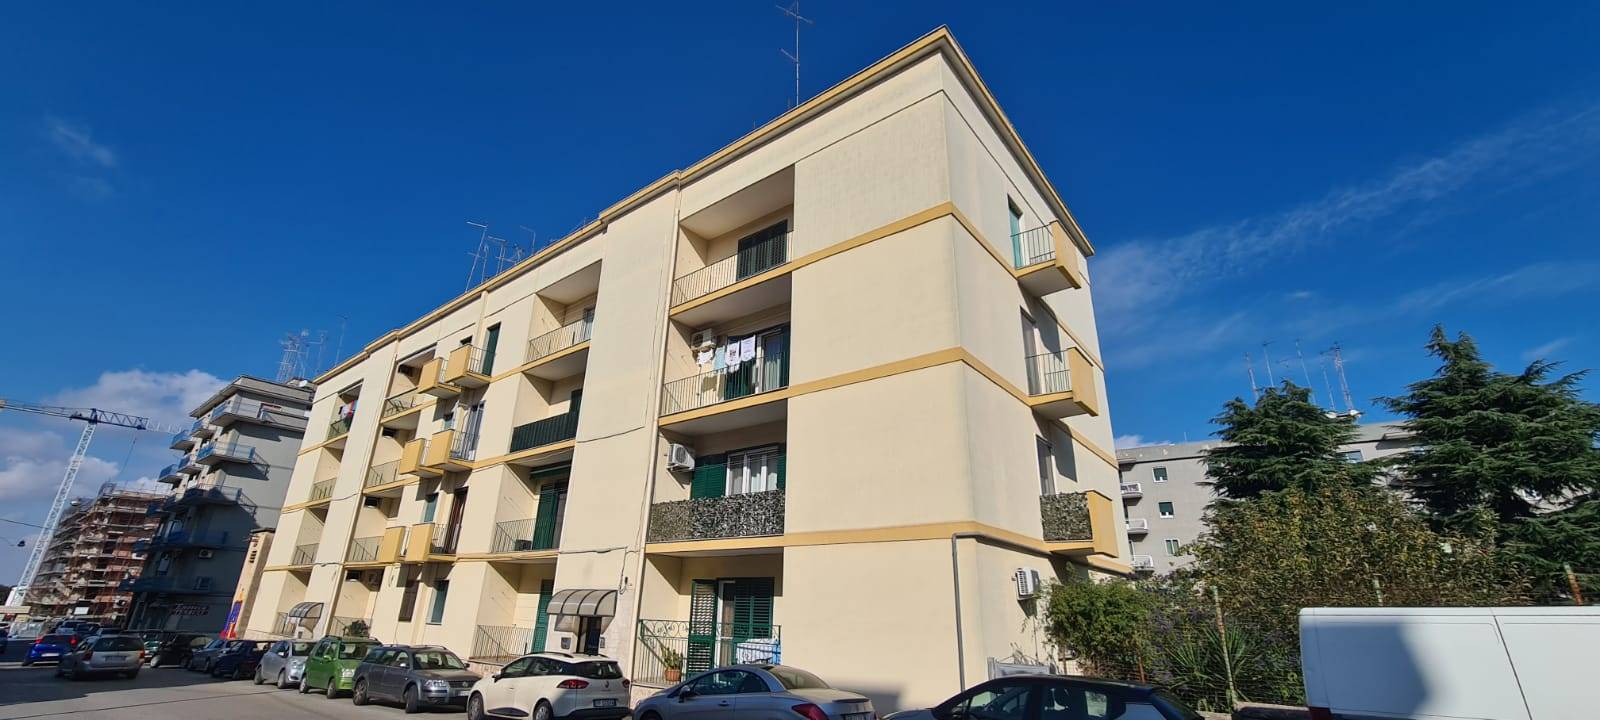 Appartamento in vendita a Martina Franca, 4 locali, prezzo € 110.000 | PortaleAgenzieImmobiliari.it